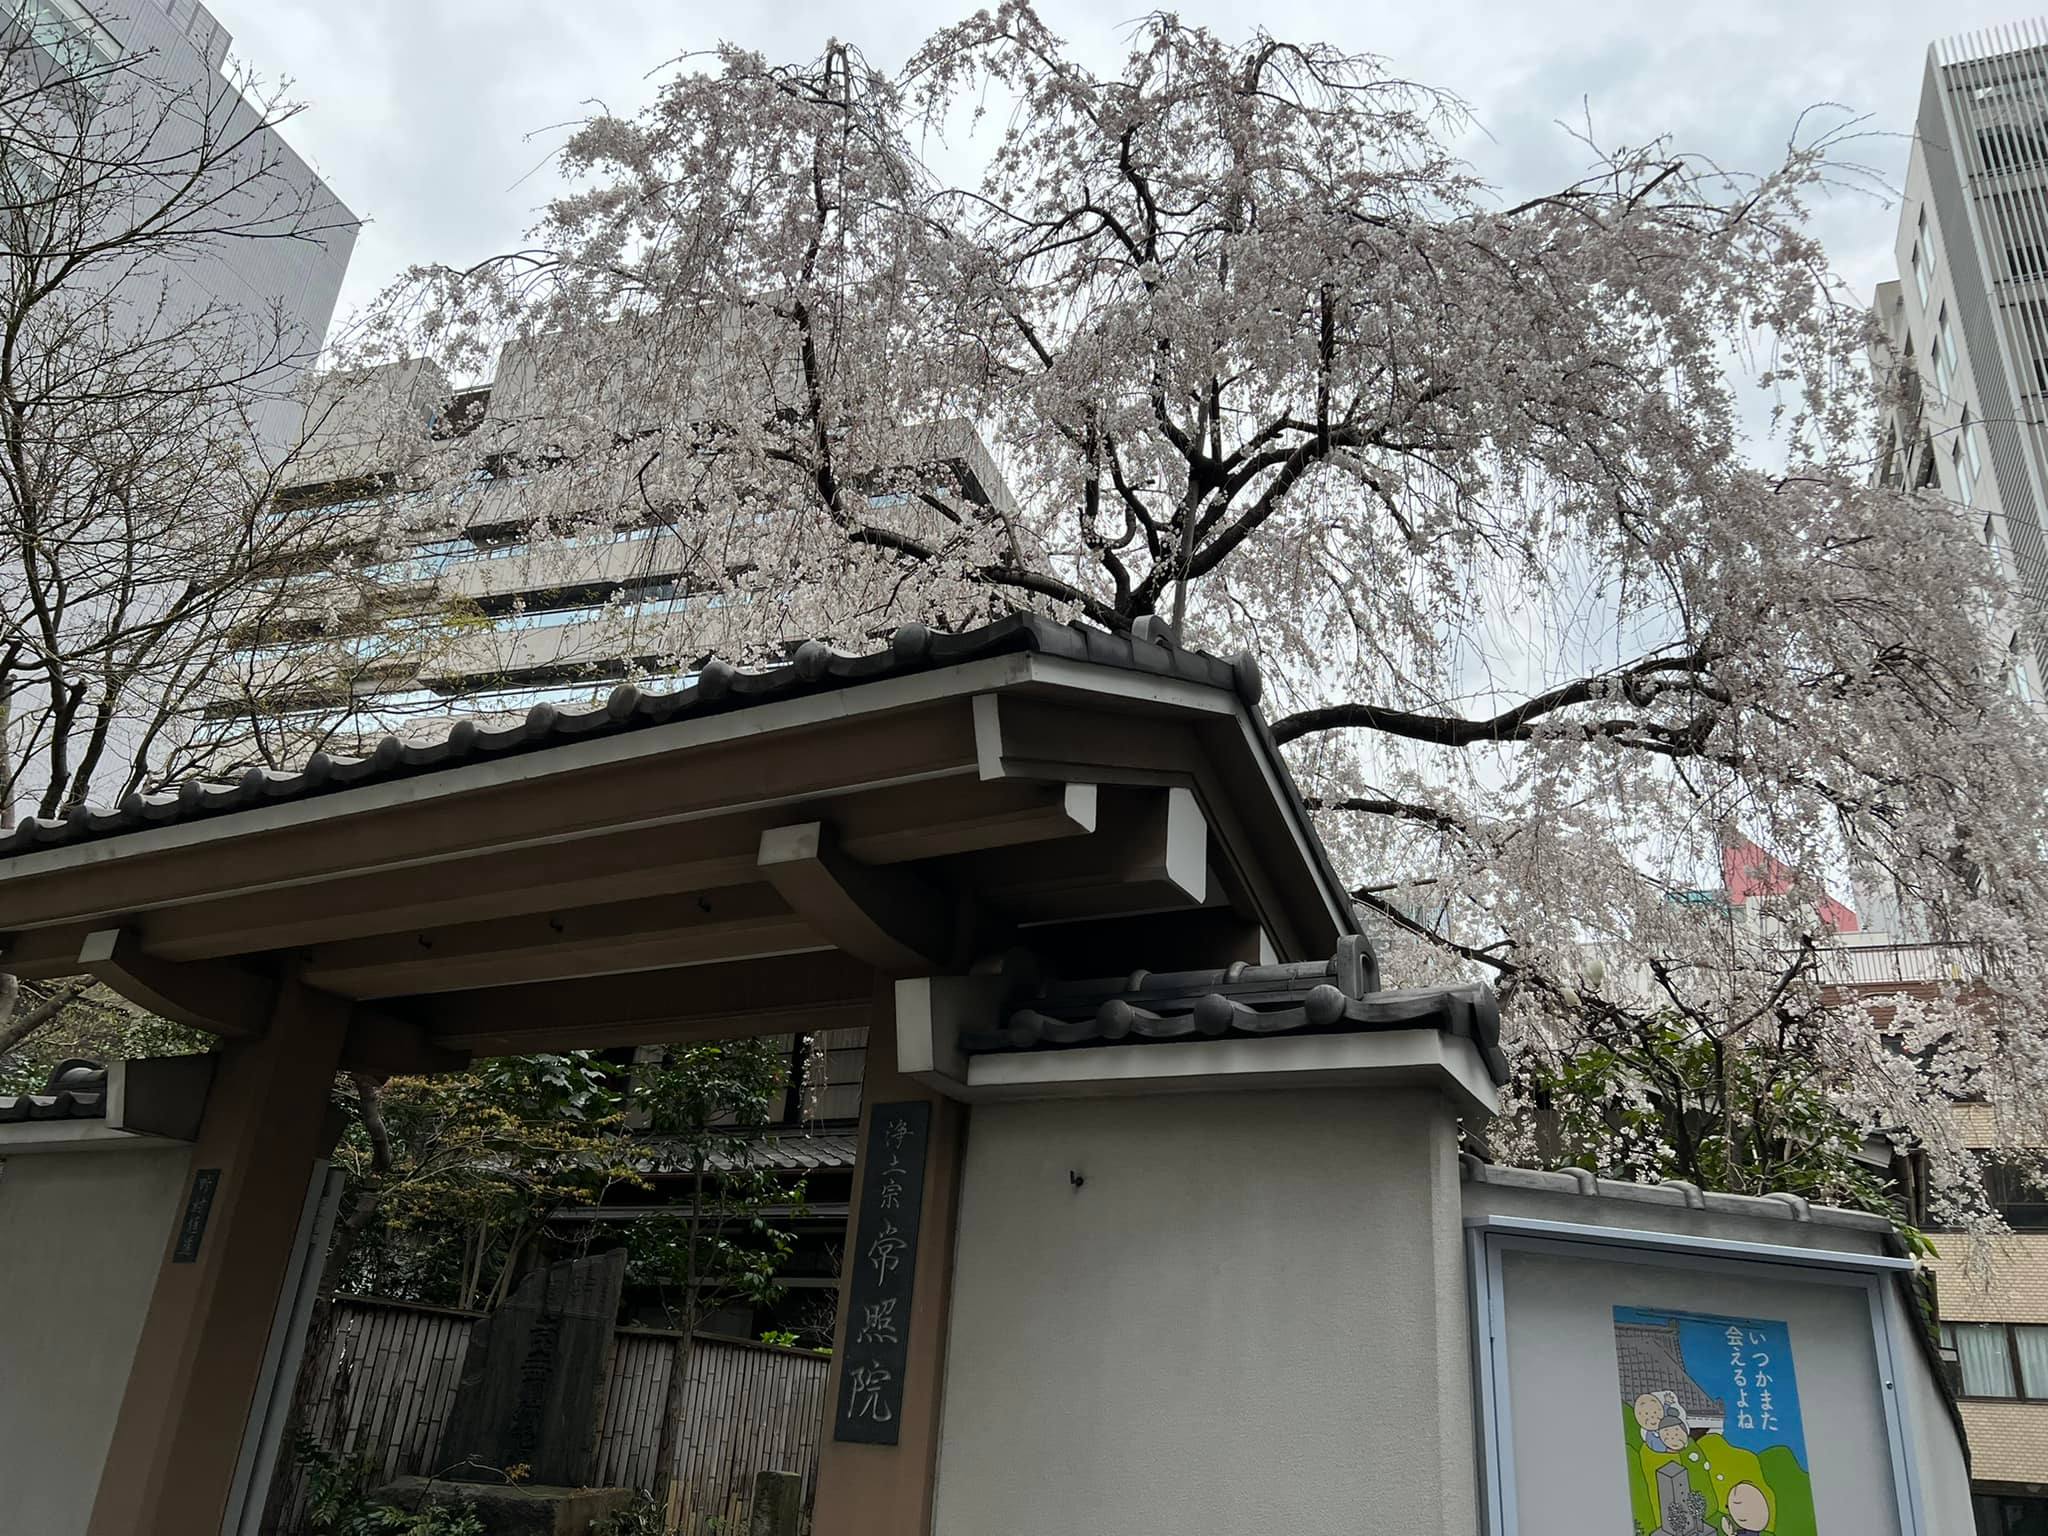 議会棟に向かう際にある、常照院さんのしだれ桜が今年も綺麗に咲いています。